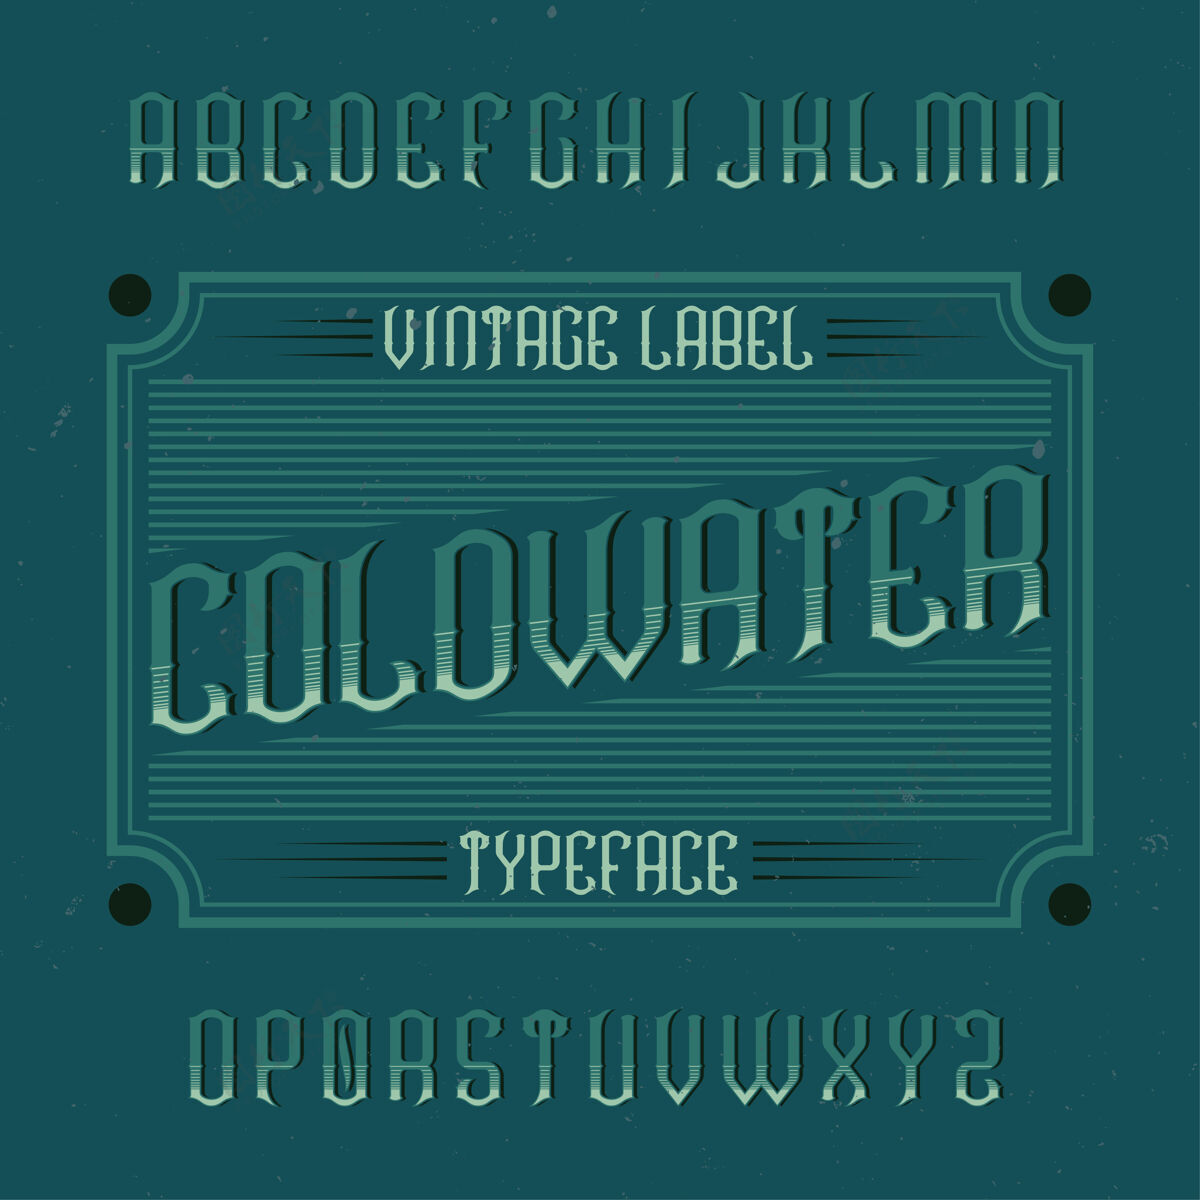 类型老式标签字体命名为coldwater刮痕拉丁语标签